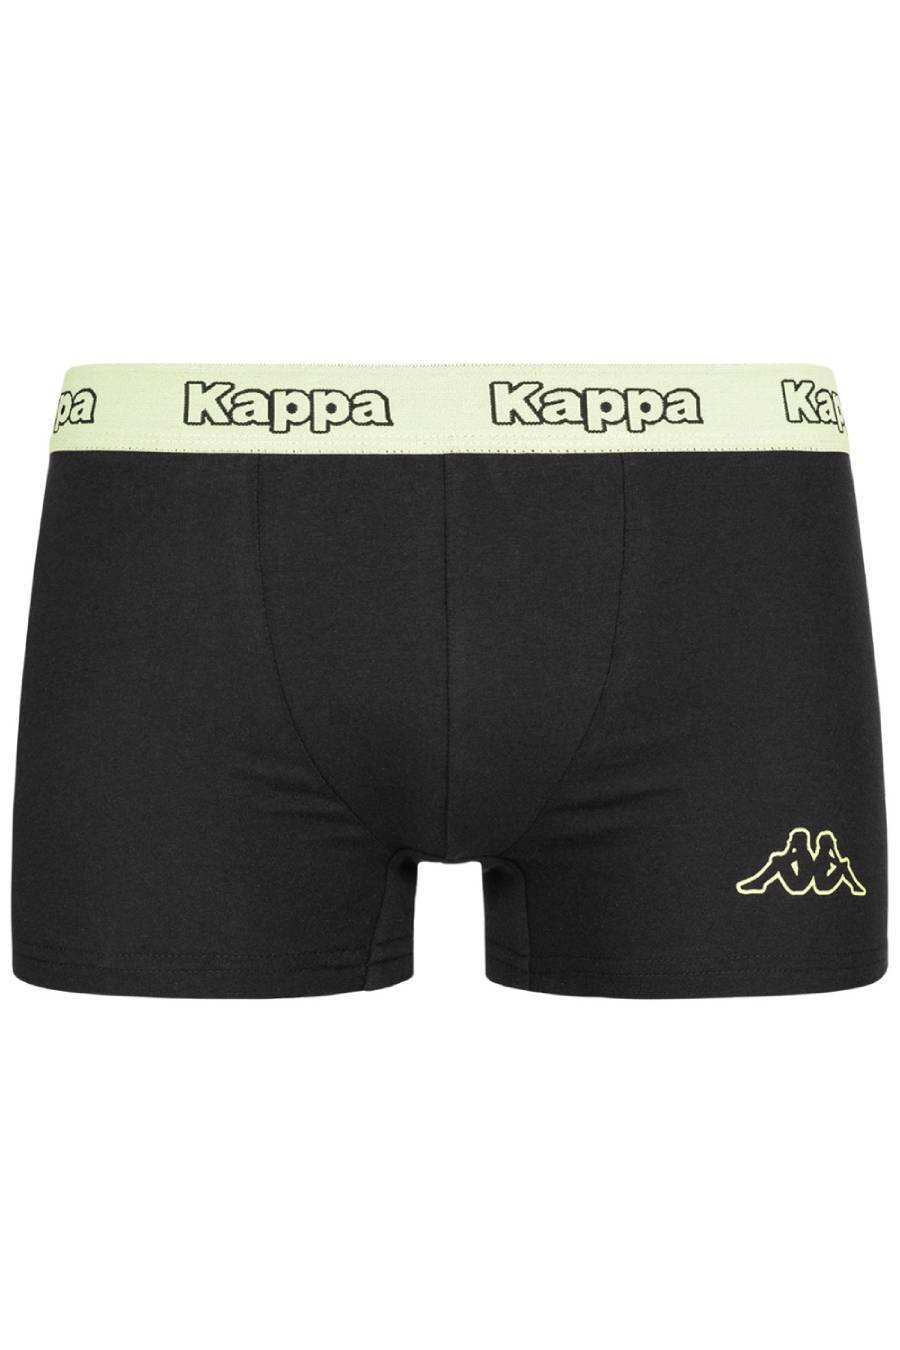 10 x Kappa Trunks Mens Black Boxers Underwear Trunk Boxer Shorts S M L Xl Xxl